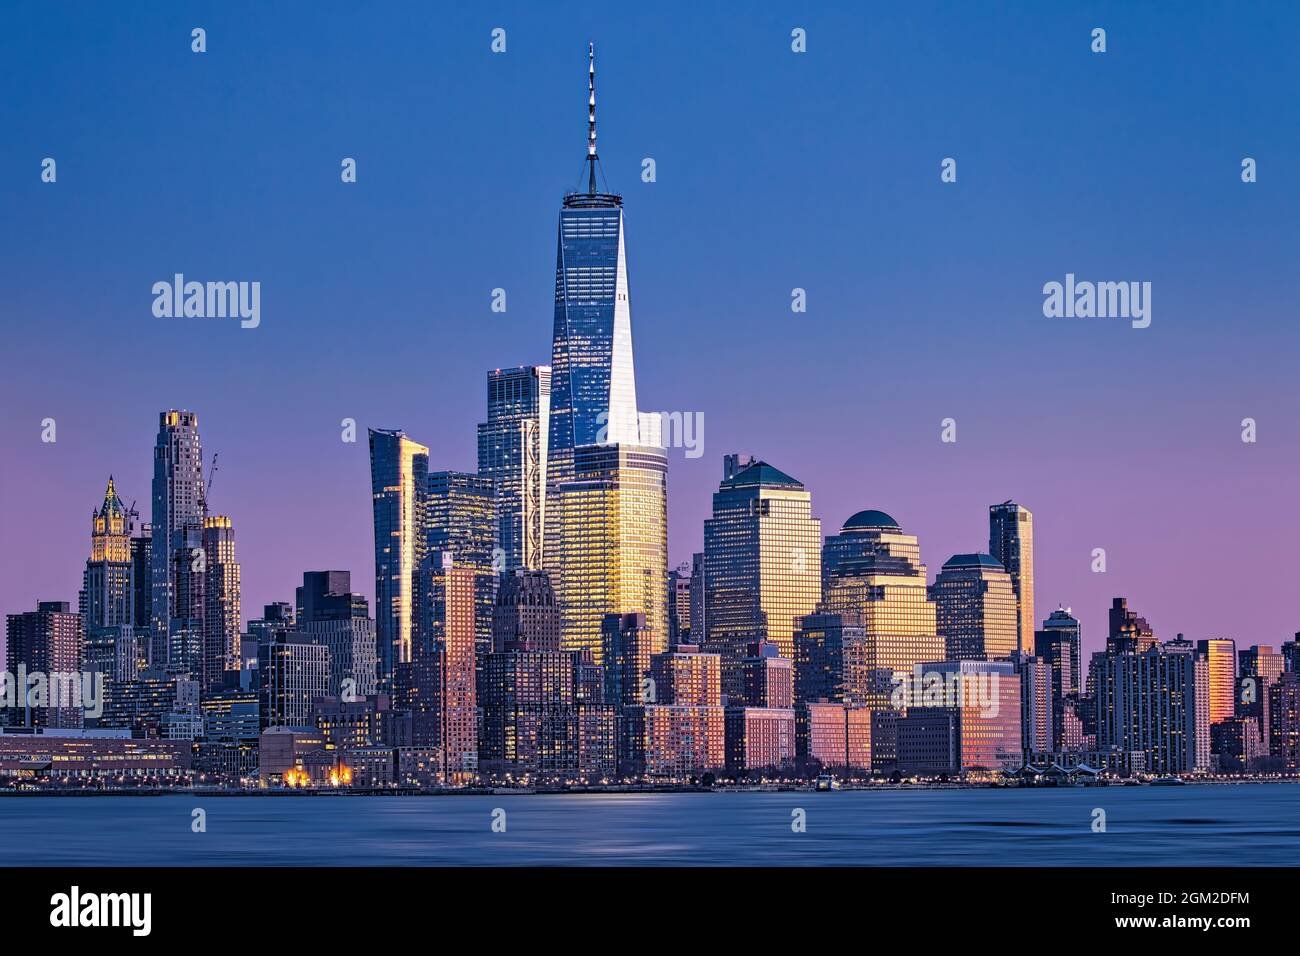 NYC Skyline World Trade Center - i colori caldi del sole tramontato si riflettono sugli edifici della Lower Manhattan, lo skyline di New York. Domi Foto Stock